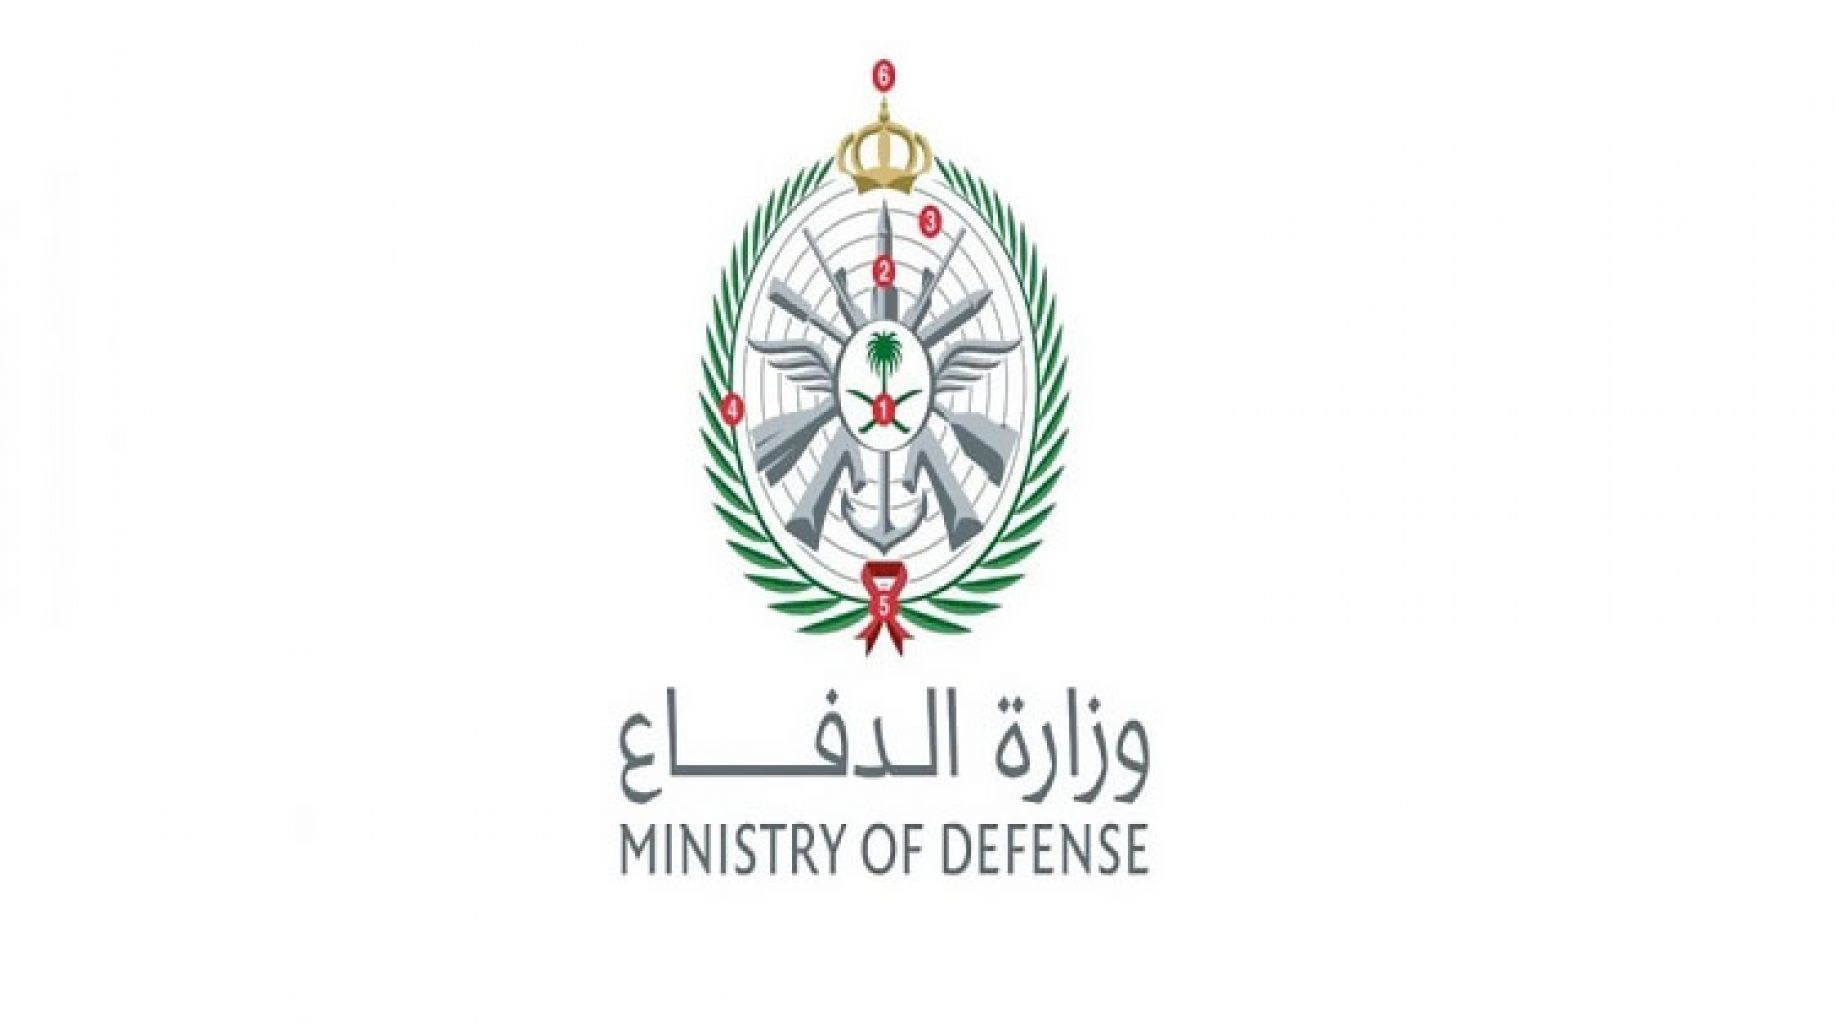 الاستعلام عن نتائج الترشيح وزارة الدفاع 2022-1443 على بوابة التجنيد الرسمية